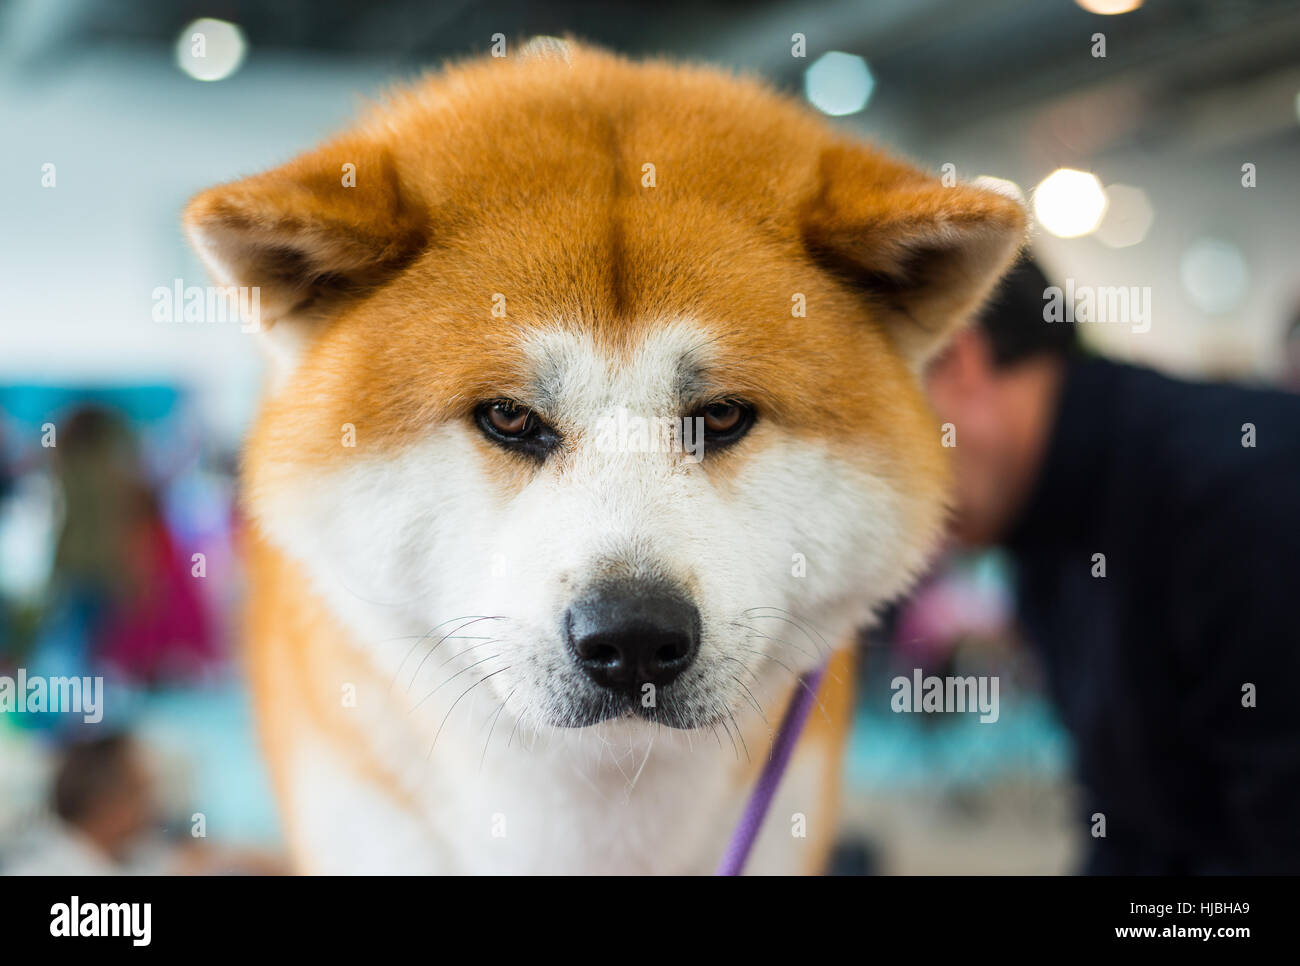 Akita Inu Purebred Puppy Dog Looking At Camera Stock Photo Alamy